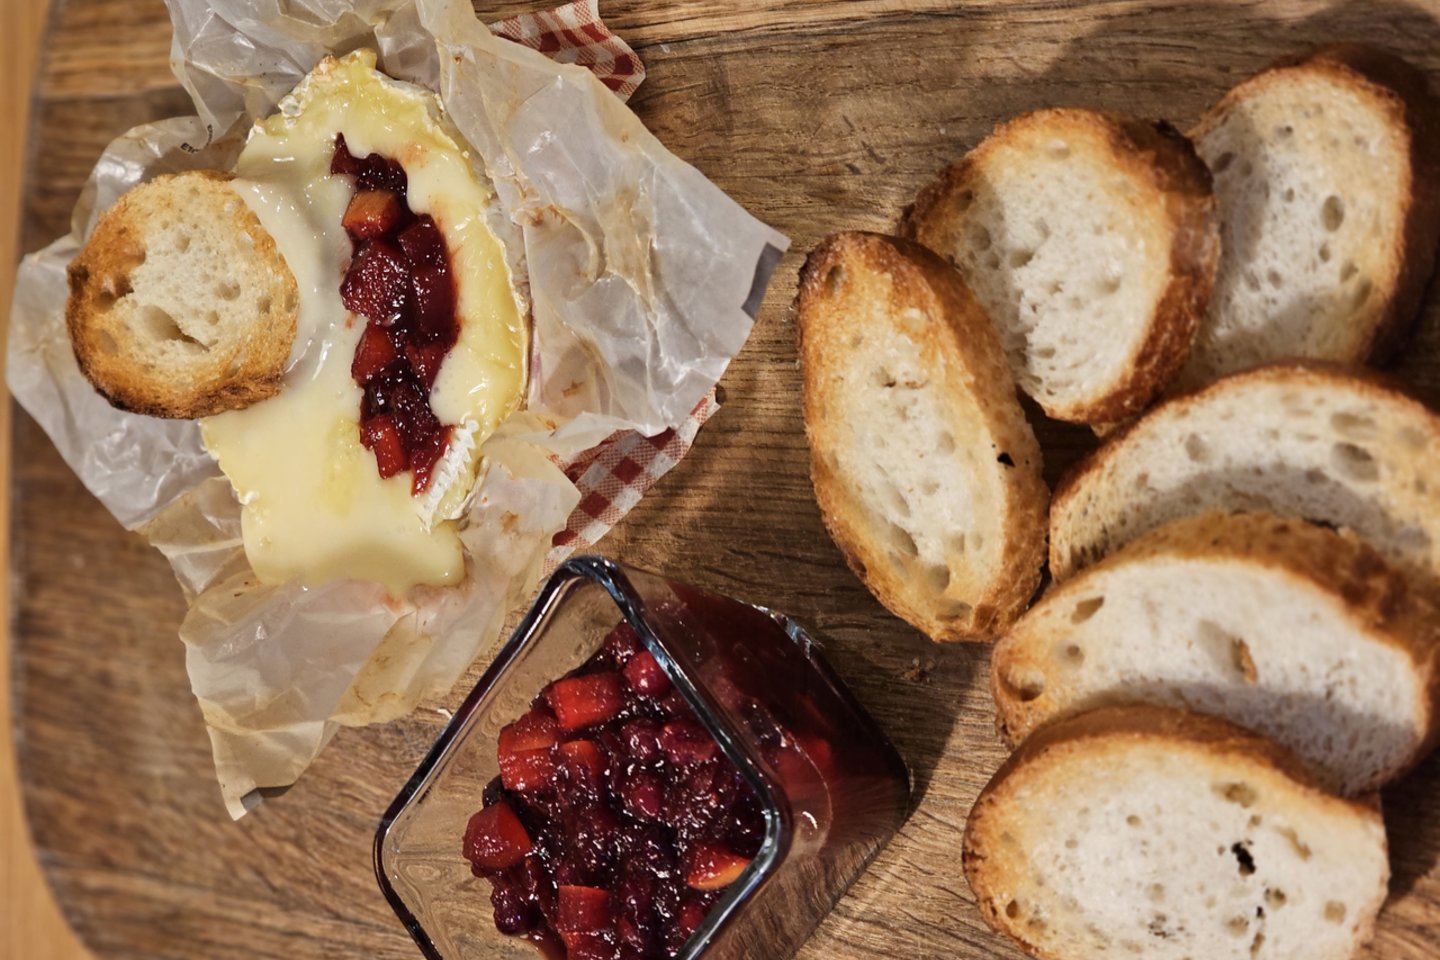  Keptas sūris su spanguolių ir obuolių pagardu pagal L. Čepracko receptą.<br> Pranešimo autorių nuotr.